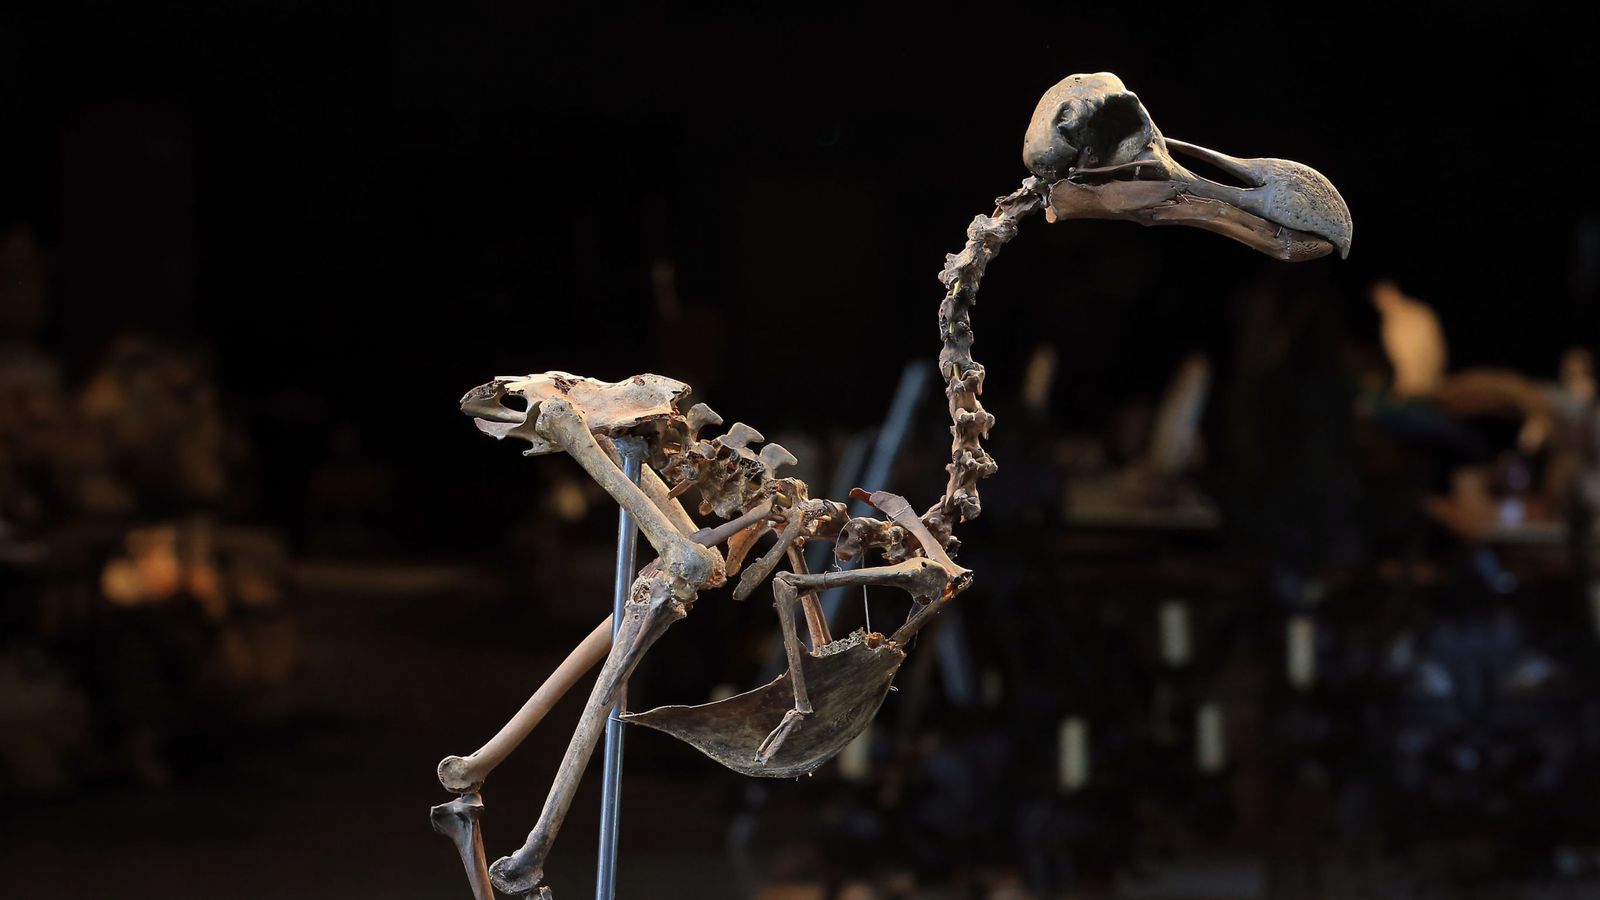 real dodo bird skeleton